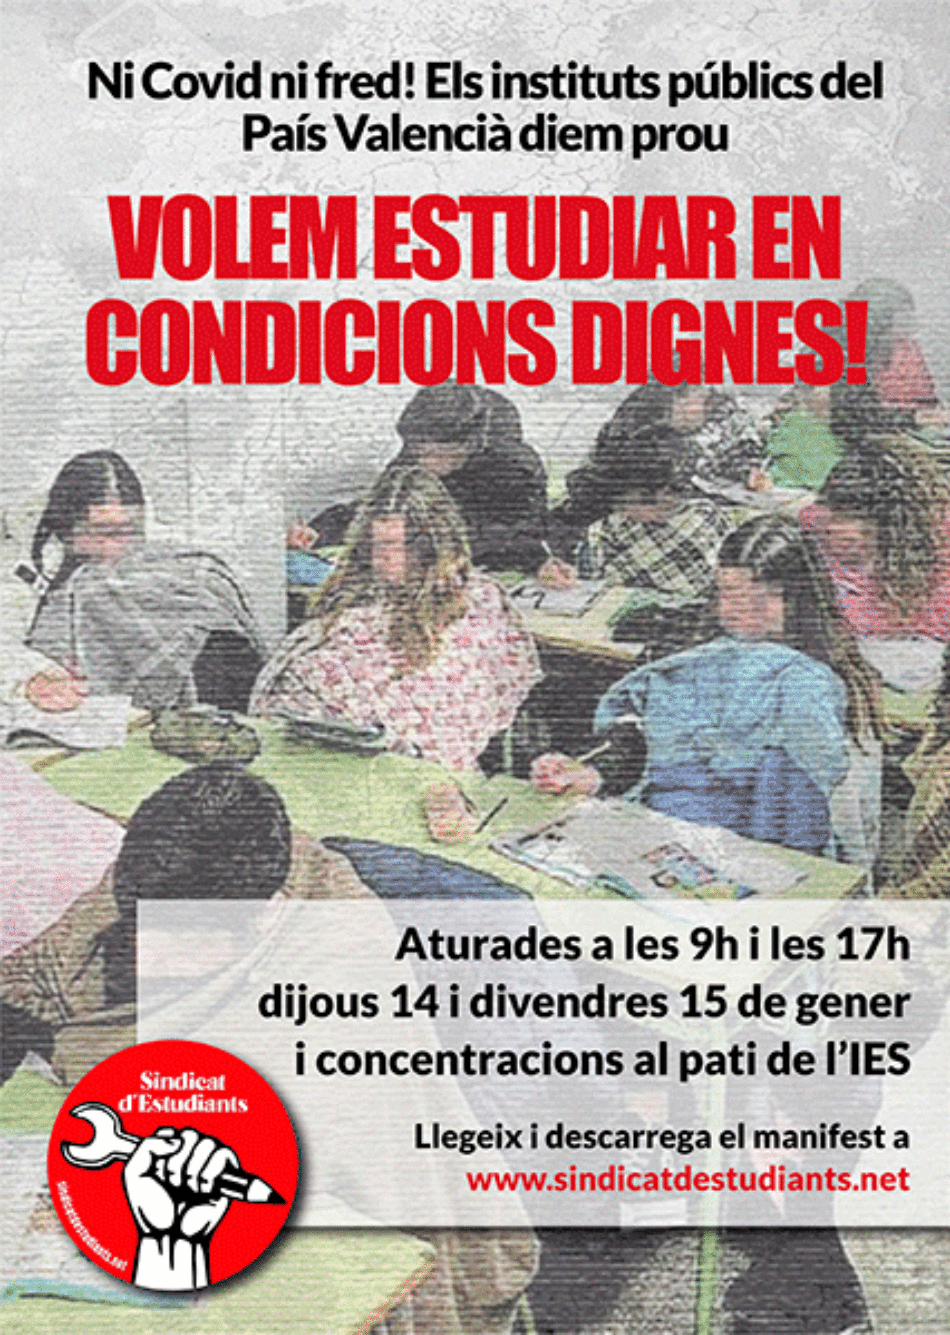 País Valencià • Ni Covid ni fred! Aturades dijous 14 i divendres 15 per unes condicions d’estudi dignes